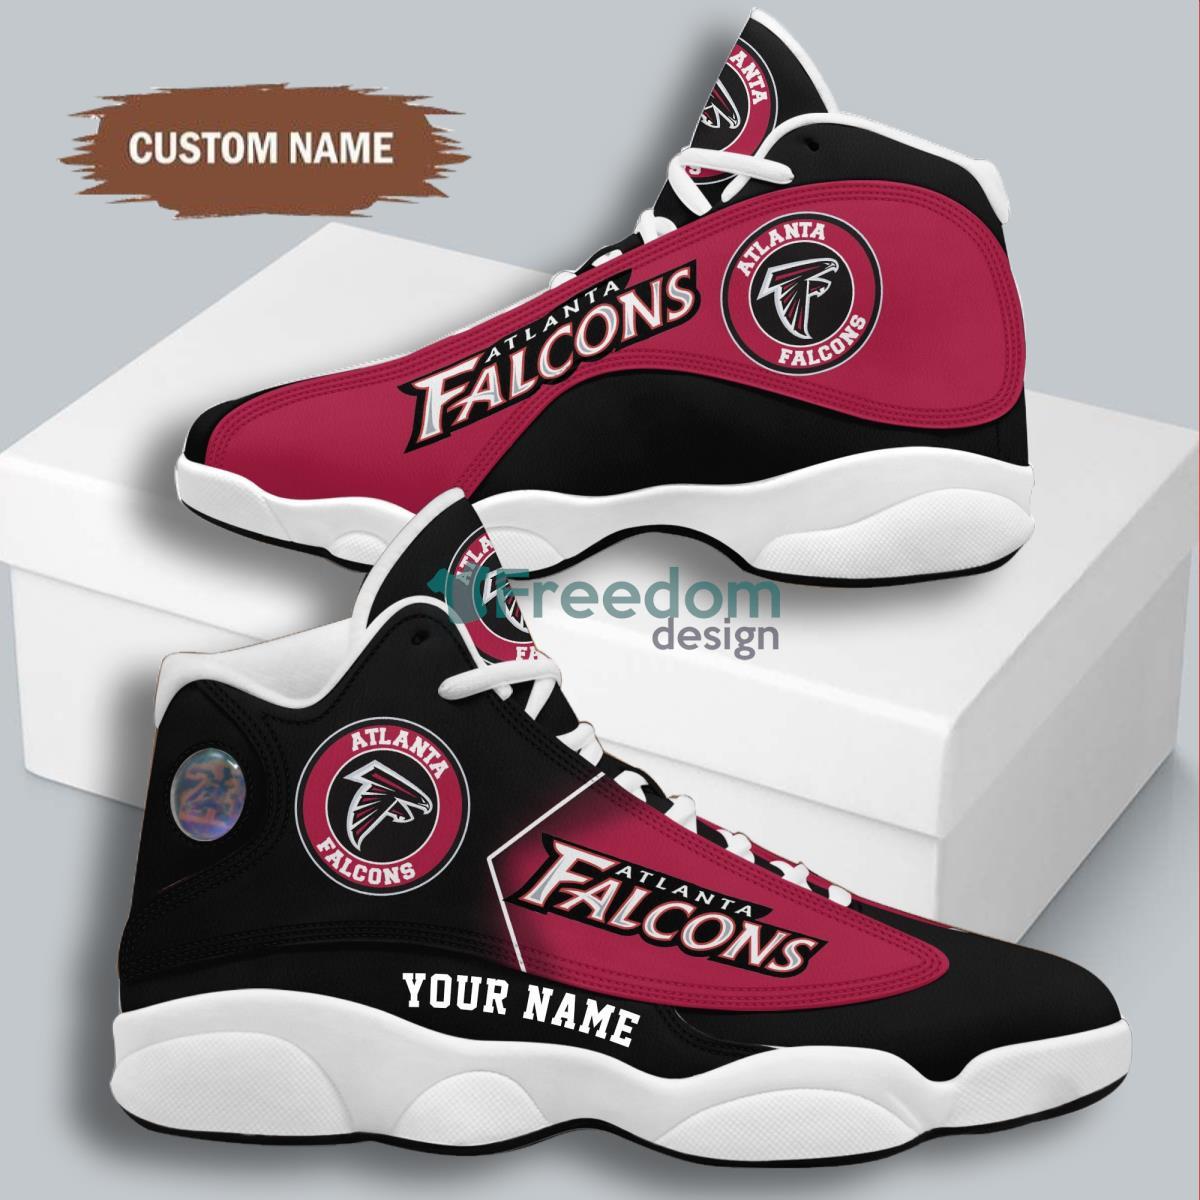 Alanta Falcons Football Team Best Custom Name Air Jordan 13 Sneaker Product Photo 1